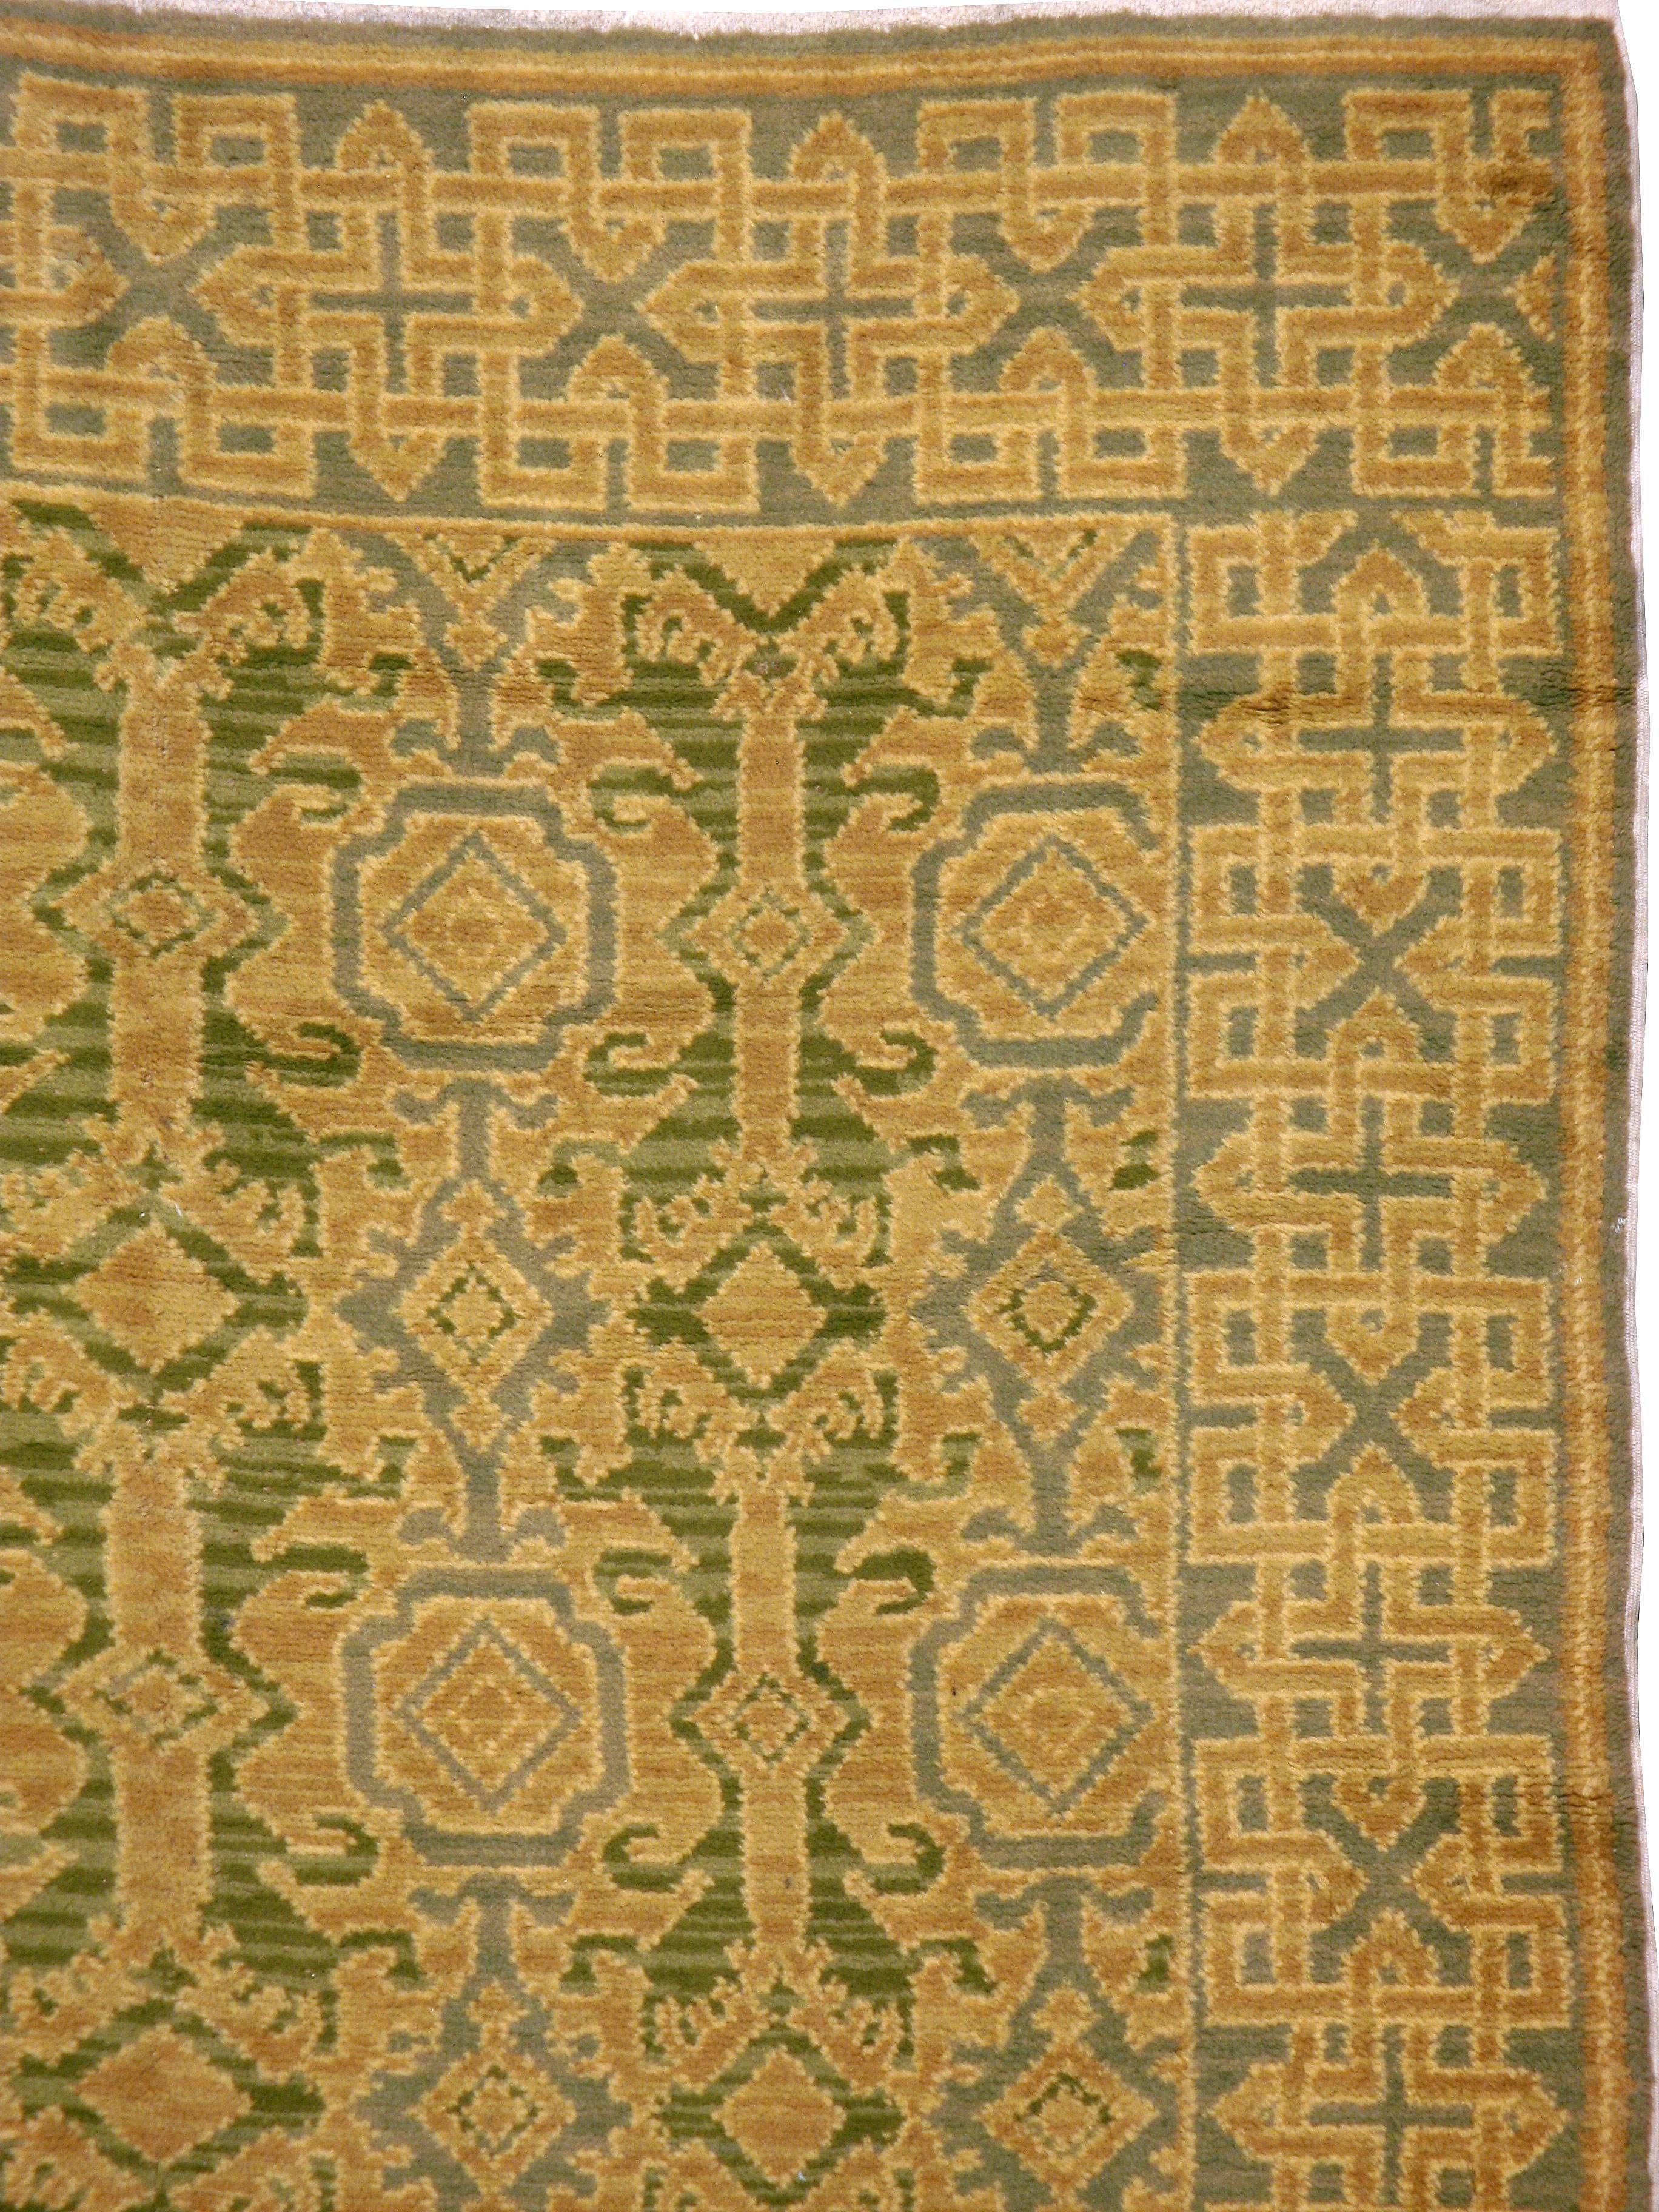 cuenca rugs